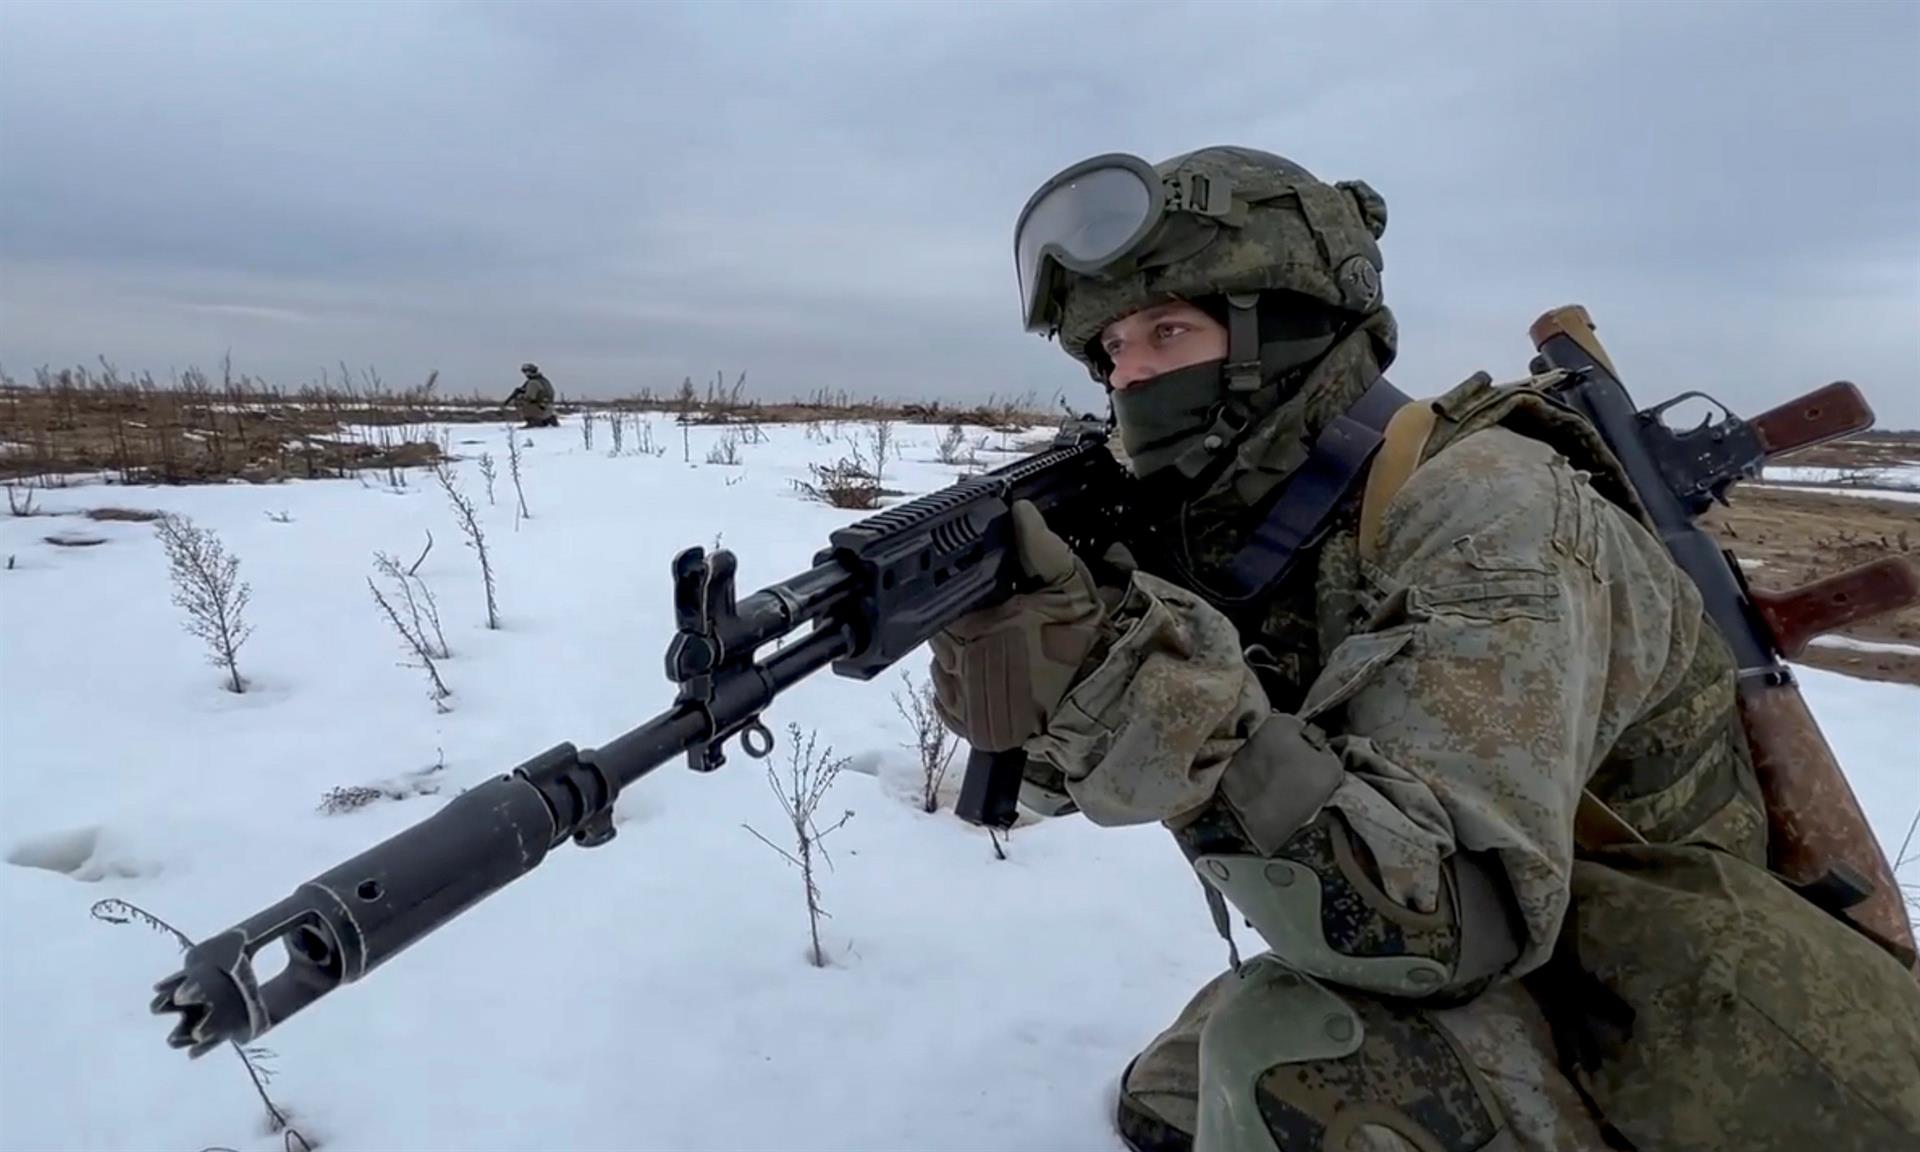 Putin envia tropes a les repúbliques ucraïneses rebels per "garantir la pau"